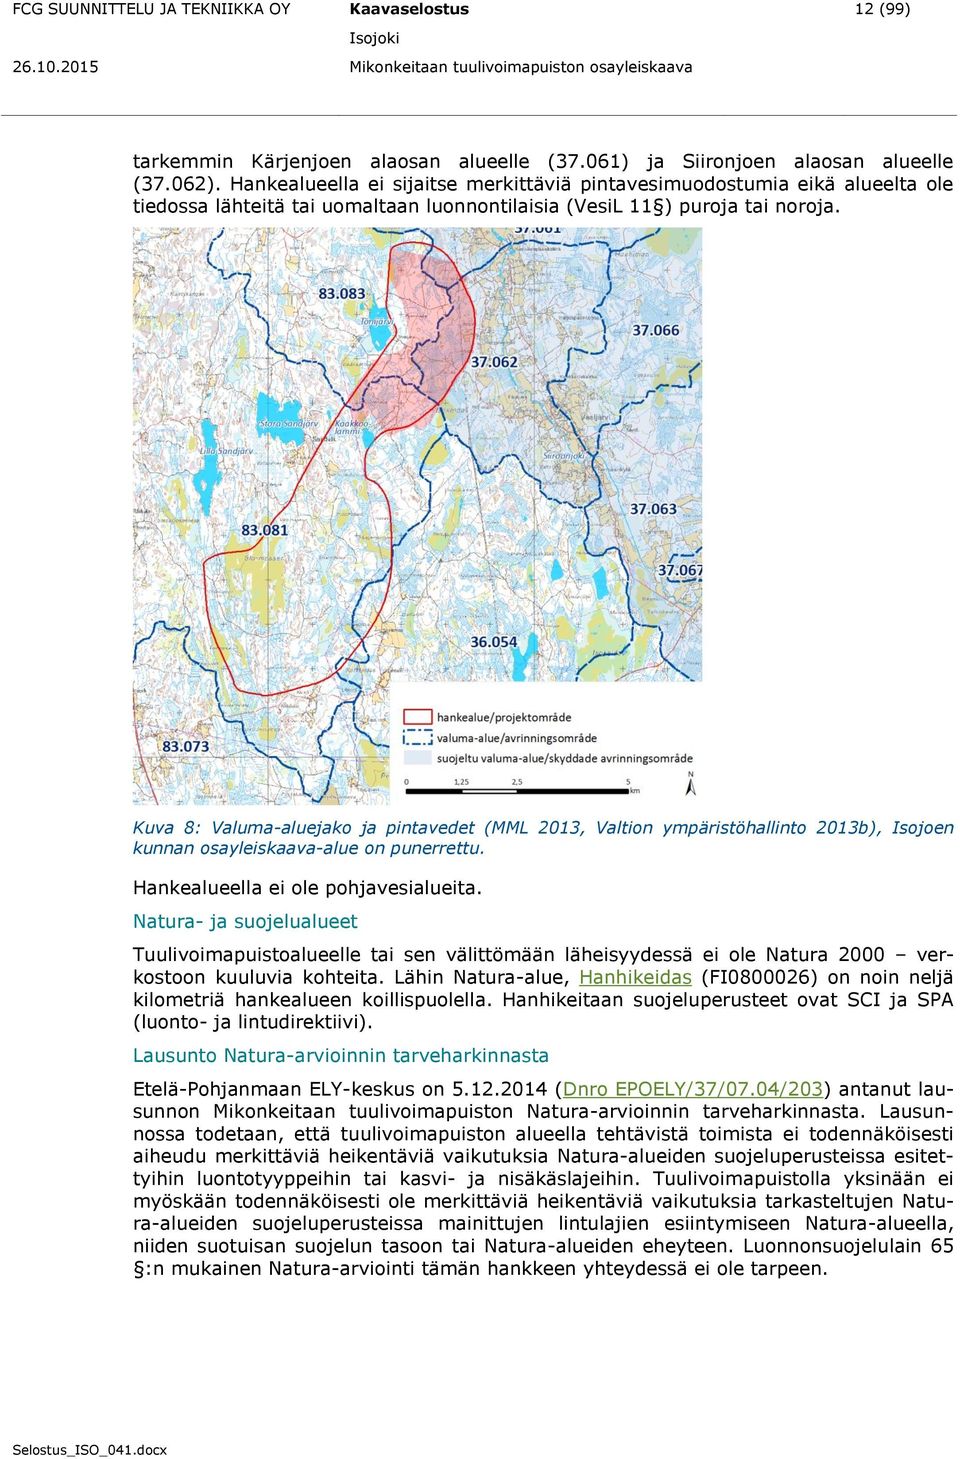 Kuva 8: Valuma-aluejako ja pintavedet (MML 2013, Valtion ympäristöhallinto 2013b), Isojoen kunnan osayleiskaava-alue on punerrettu. Hankealueella ei ole pohjavesialueita.